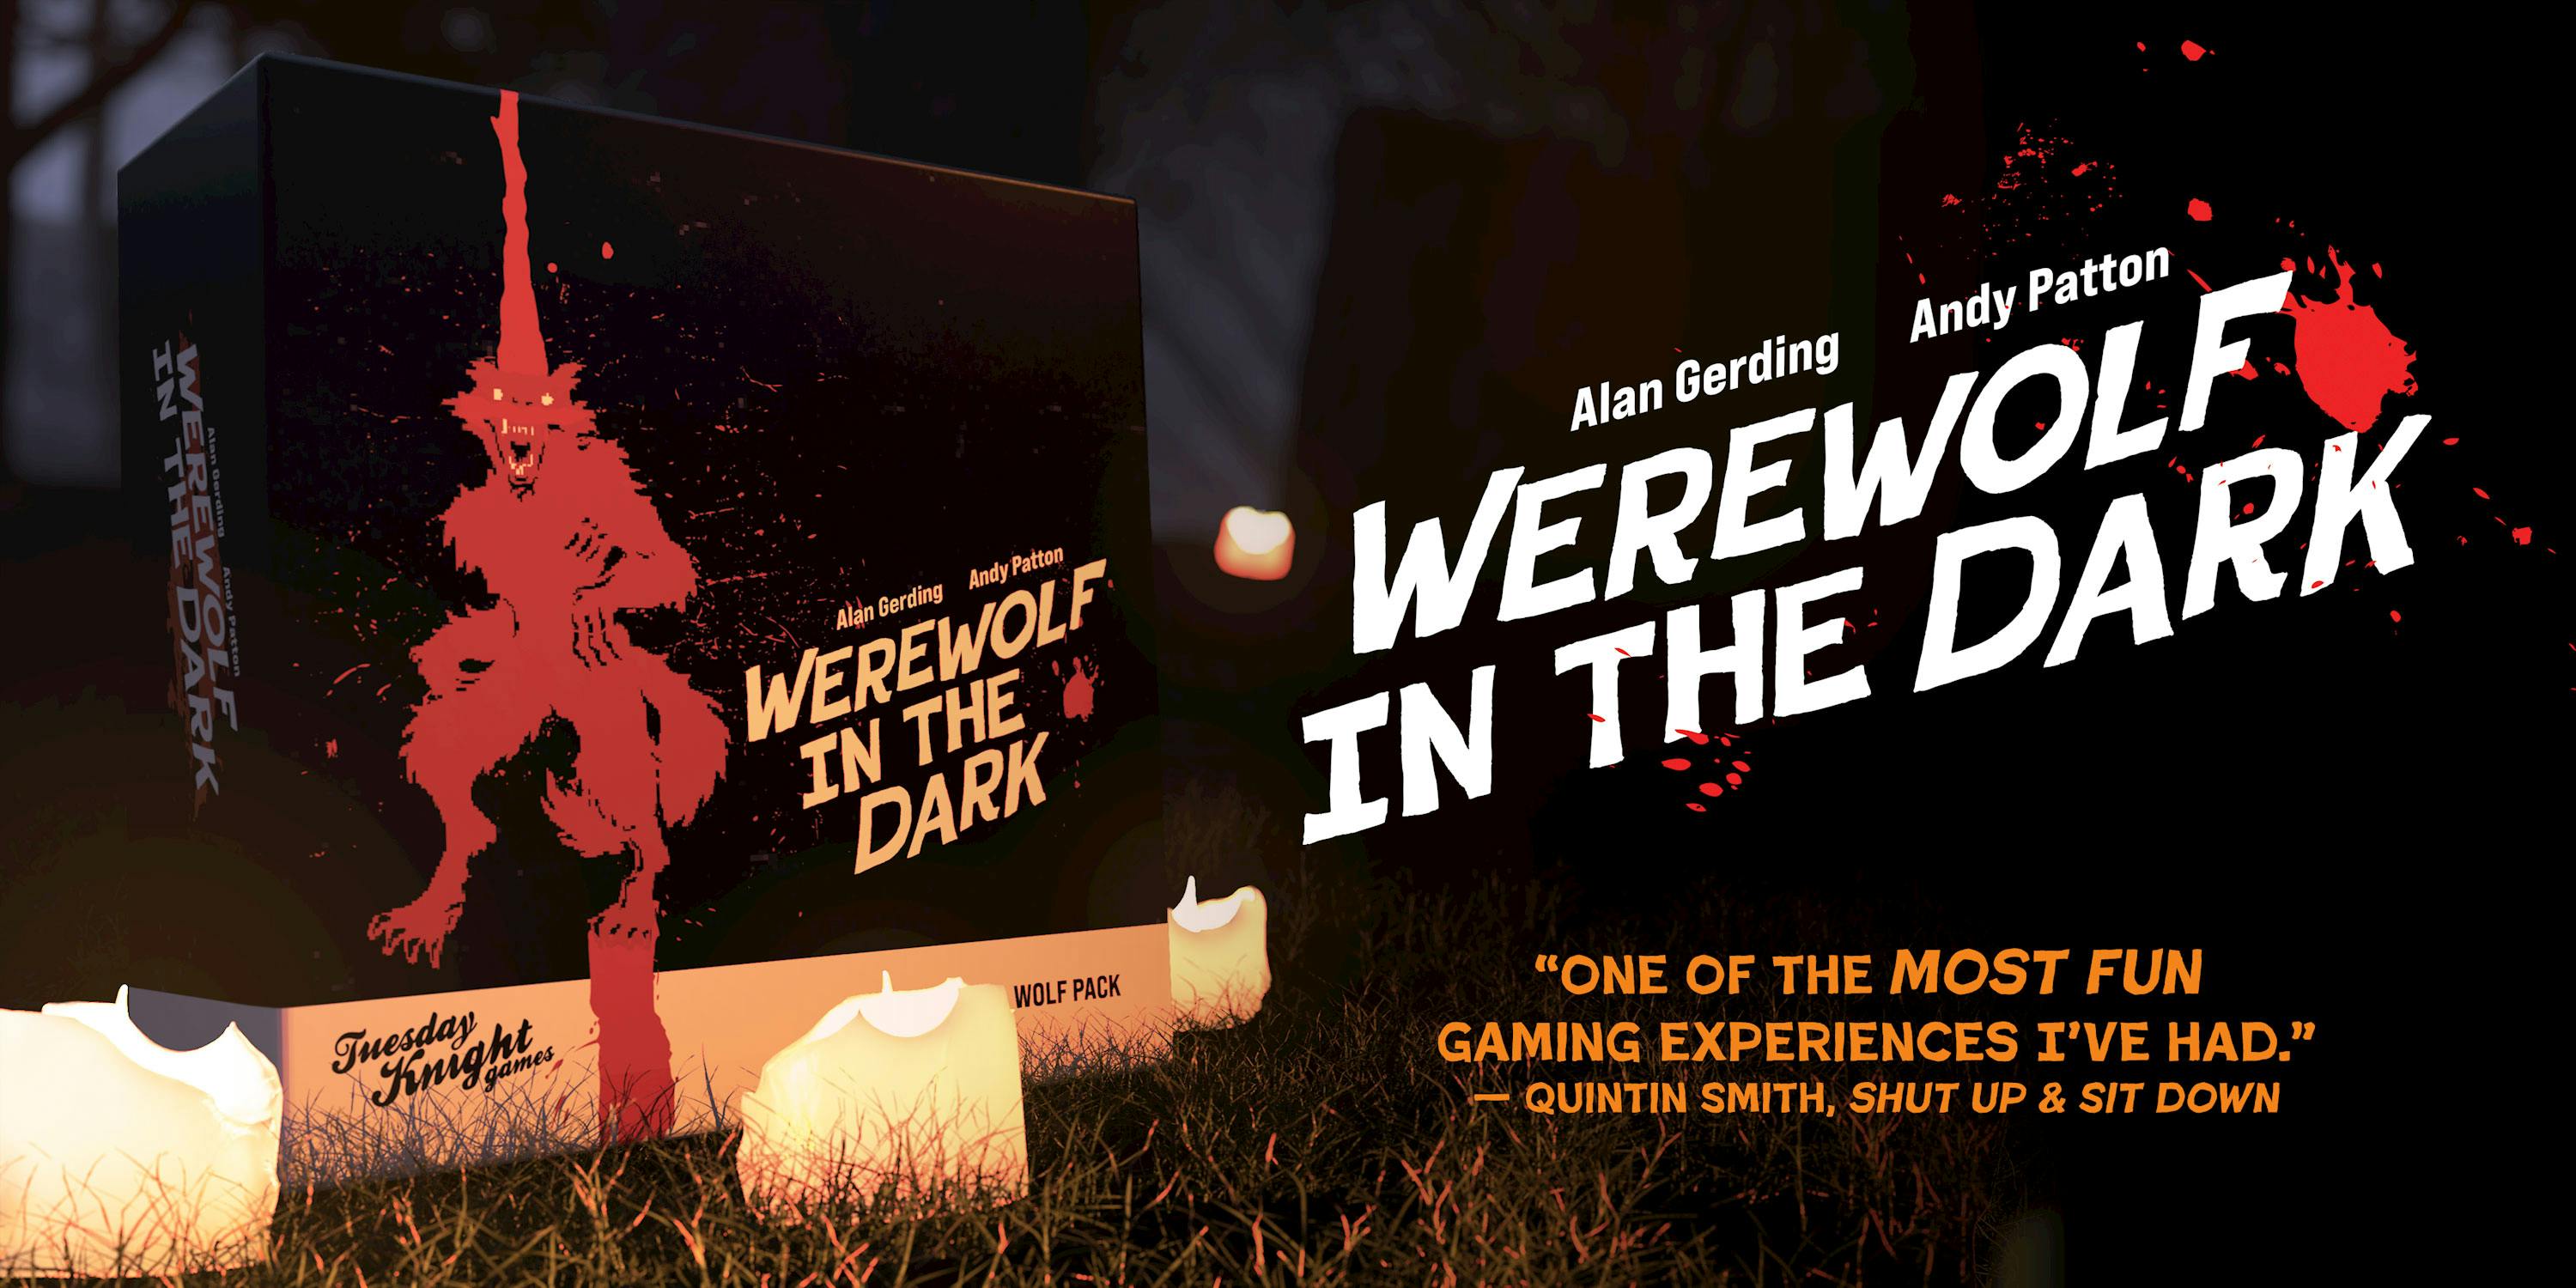 Werewolf in the Dark